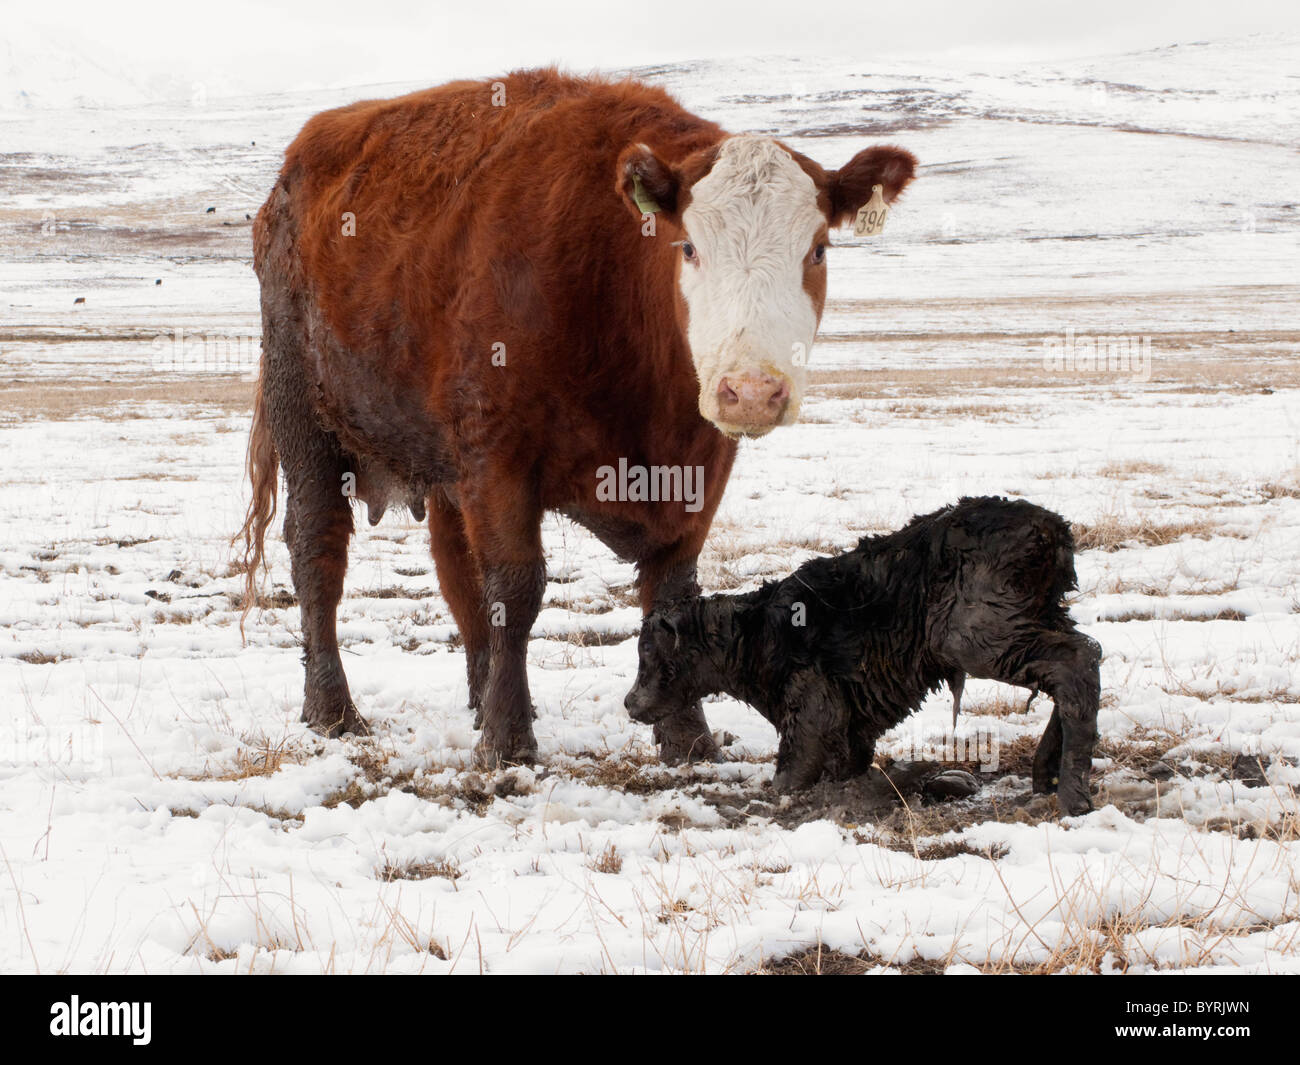 Une vache croisée Hereford se tient sur son veau nouveau-né, qui lutte pour se tenir pour la première fois sur un couvert de neige / Canada Banque D'Images